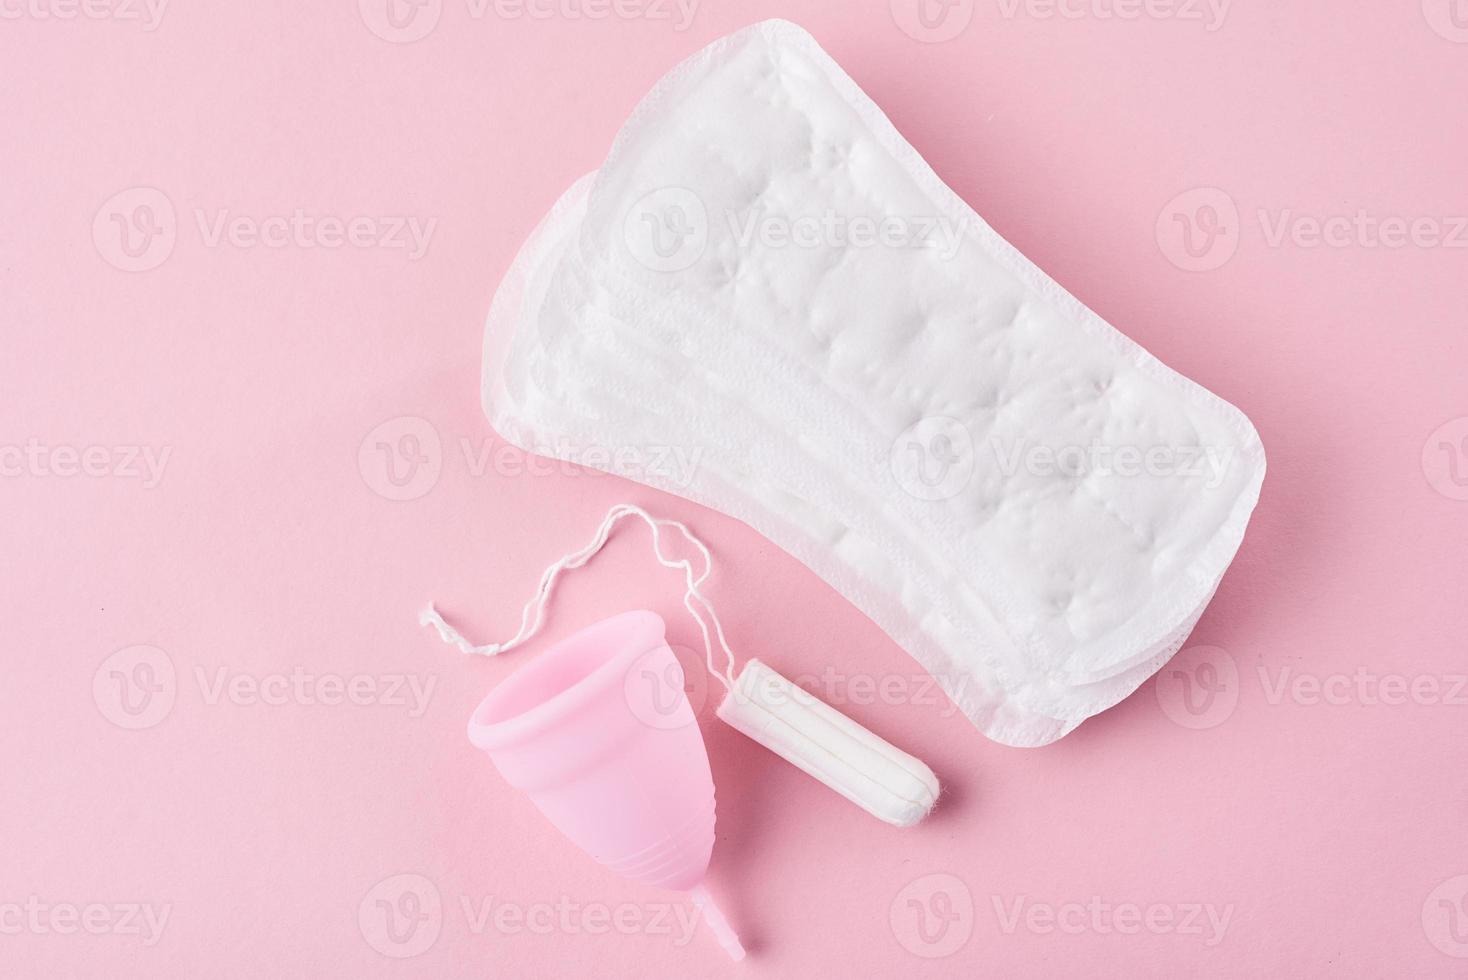 toalla sanitaria, copa menstrual y tampón sobre un fondo rosa foto